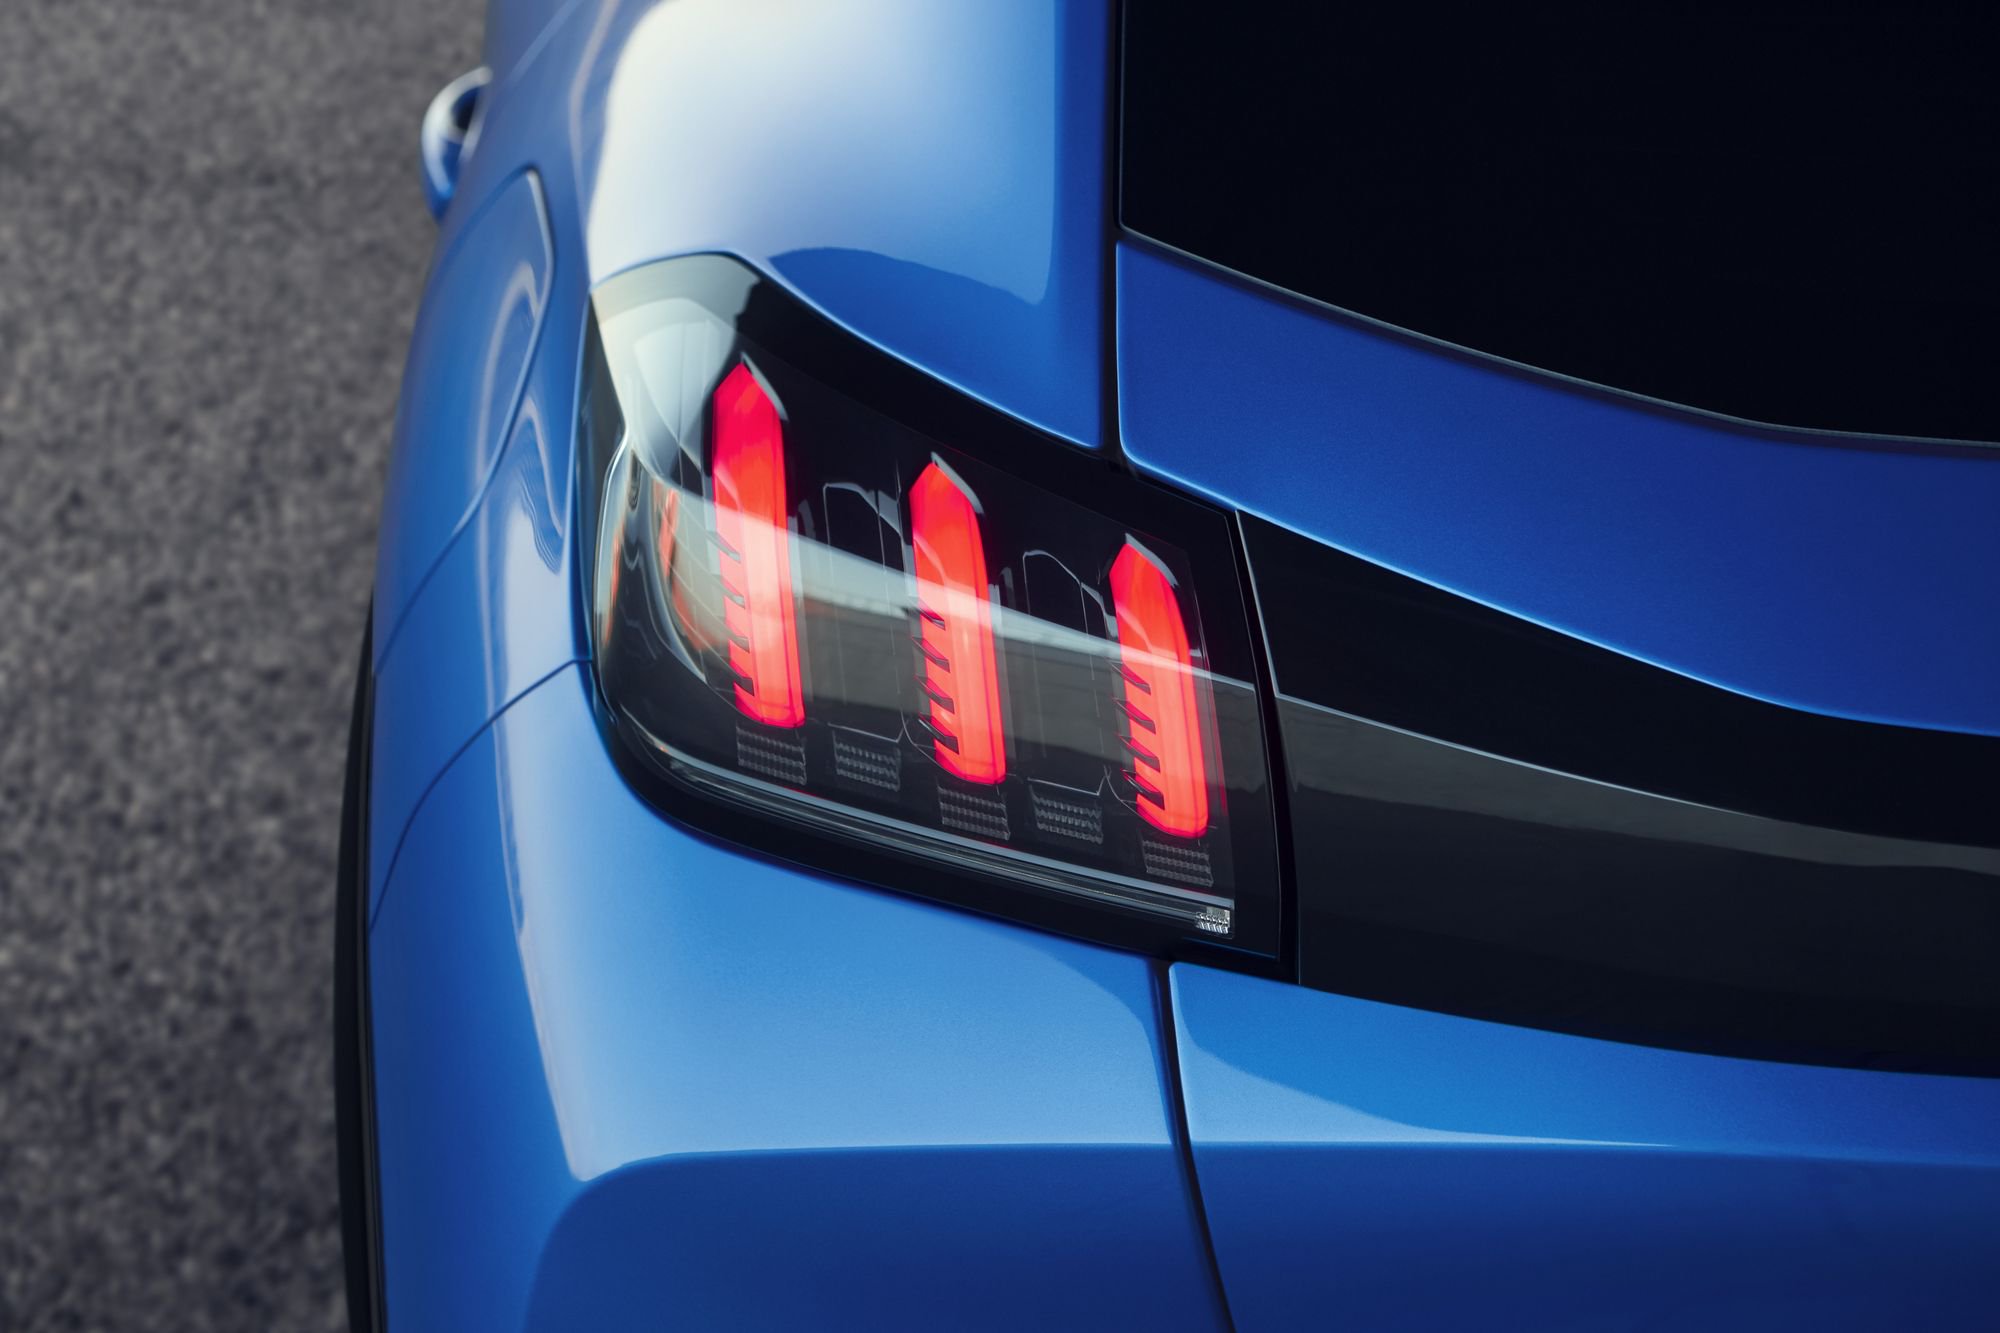 2019 Peugeot 208 tanıtıldı: Elektrikli versiyonla 340 km menzil